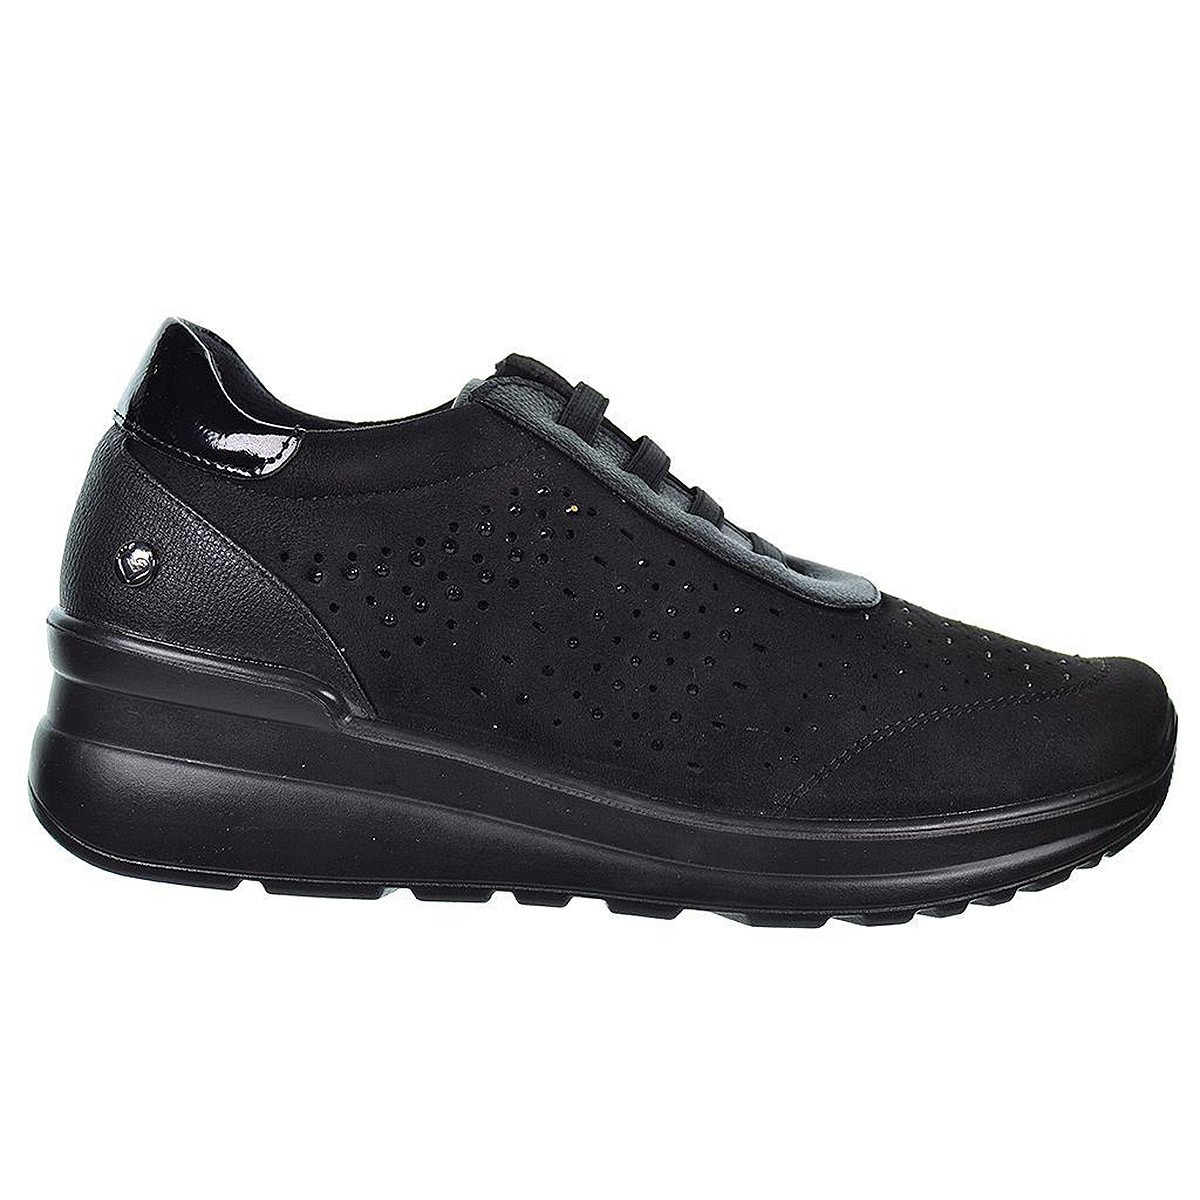 22301 Amarpies Zapato Confort Zapato en sintético perforada. Plantilla acolchada confort extraíble. Con cordones elásticos y sue